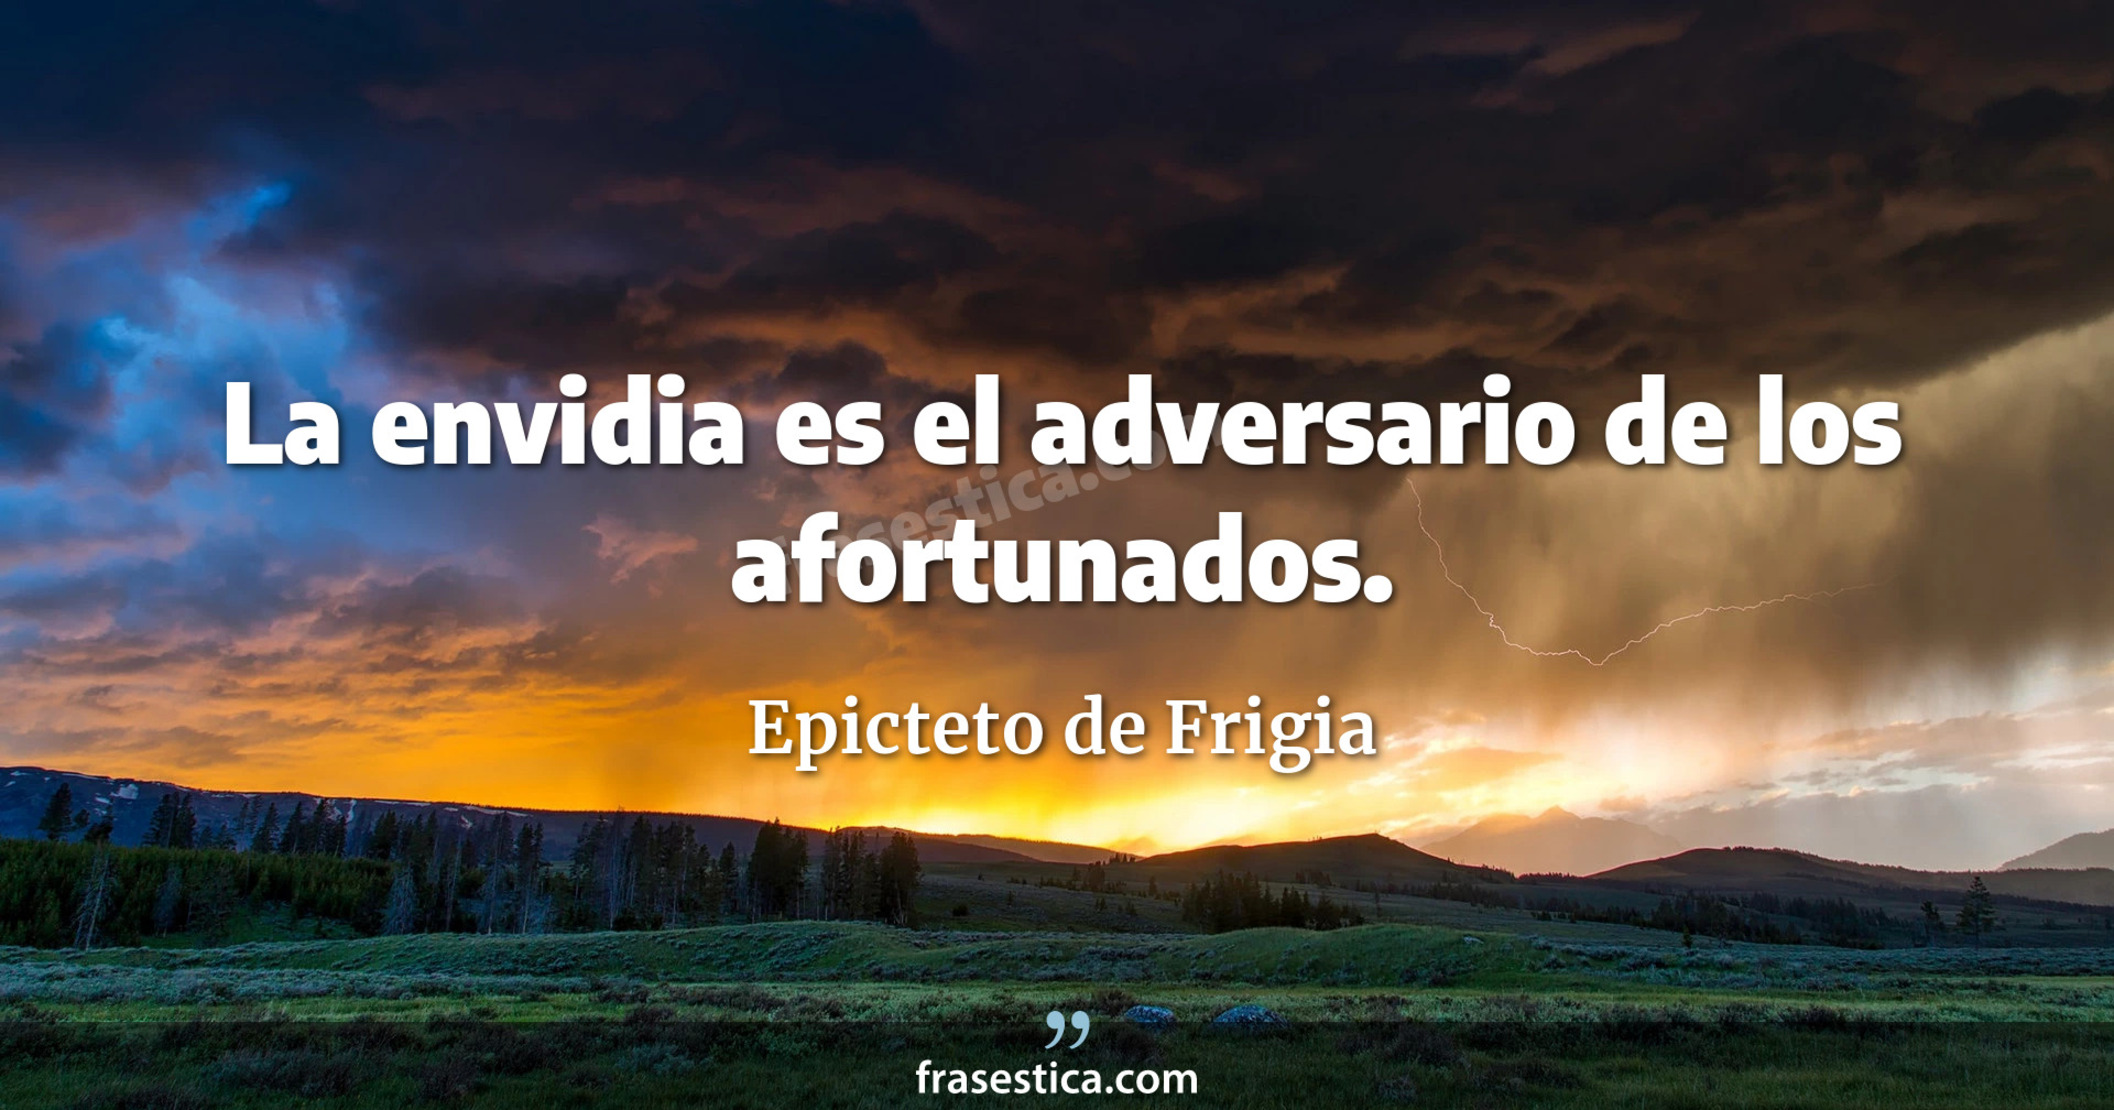 La envidia es el adversario de los afortunados. - Epicteto de Frigia